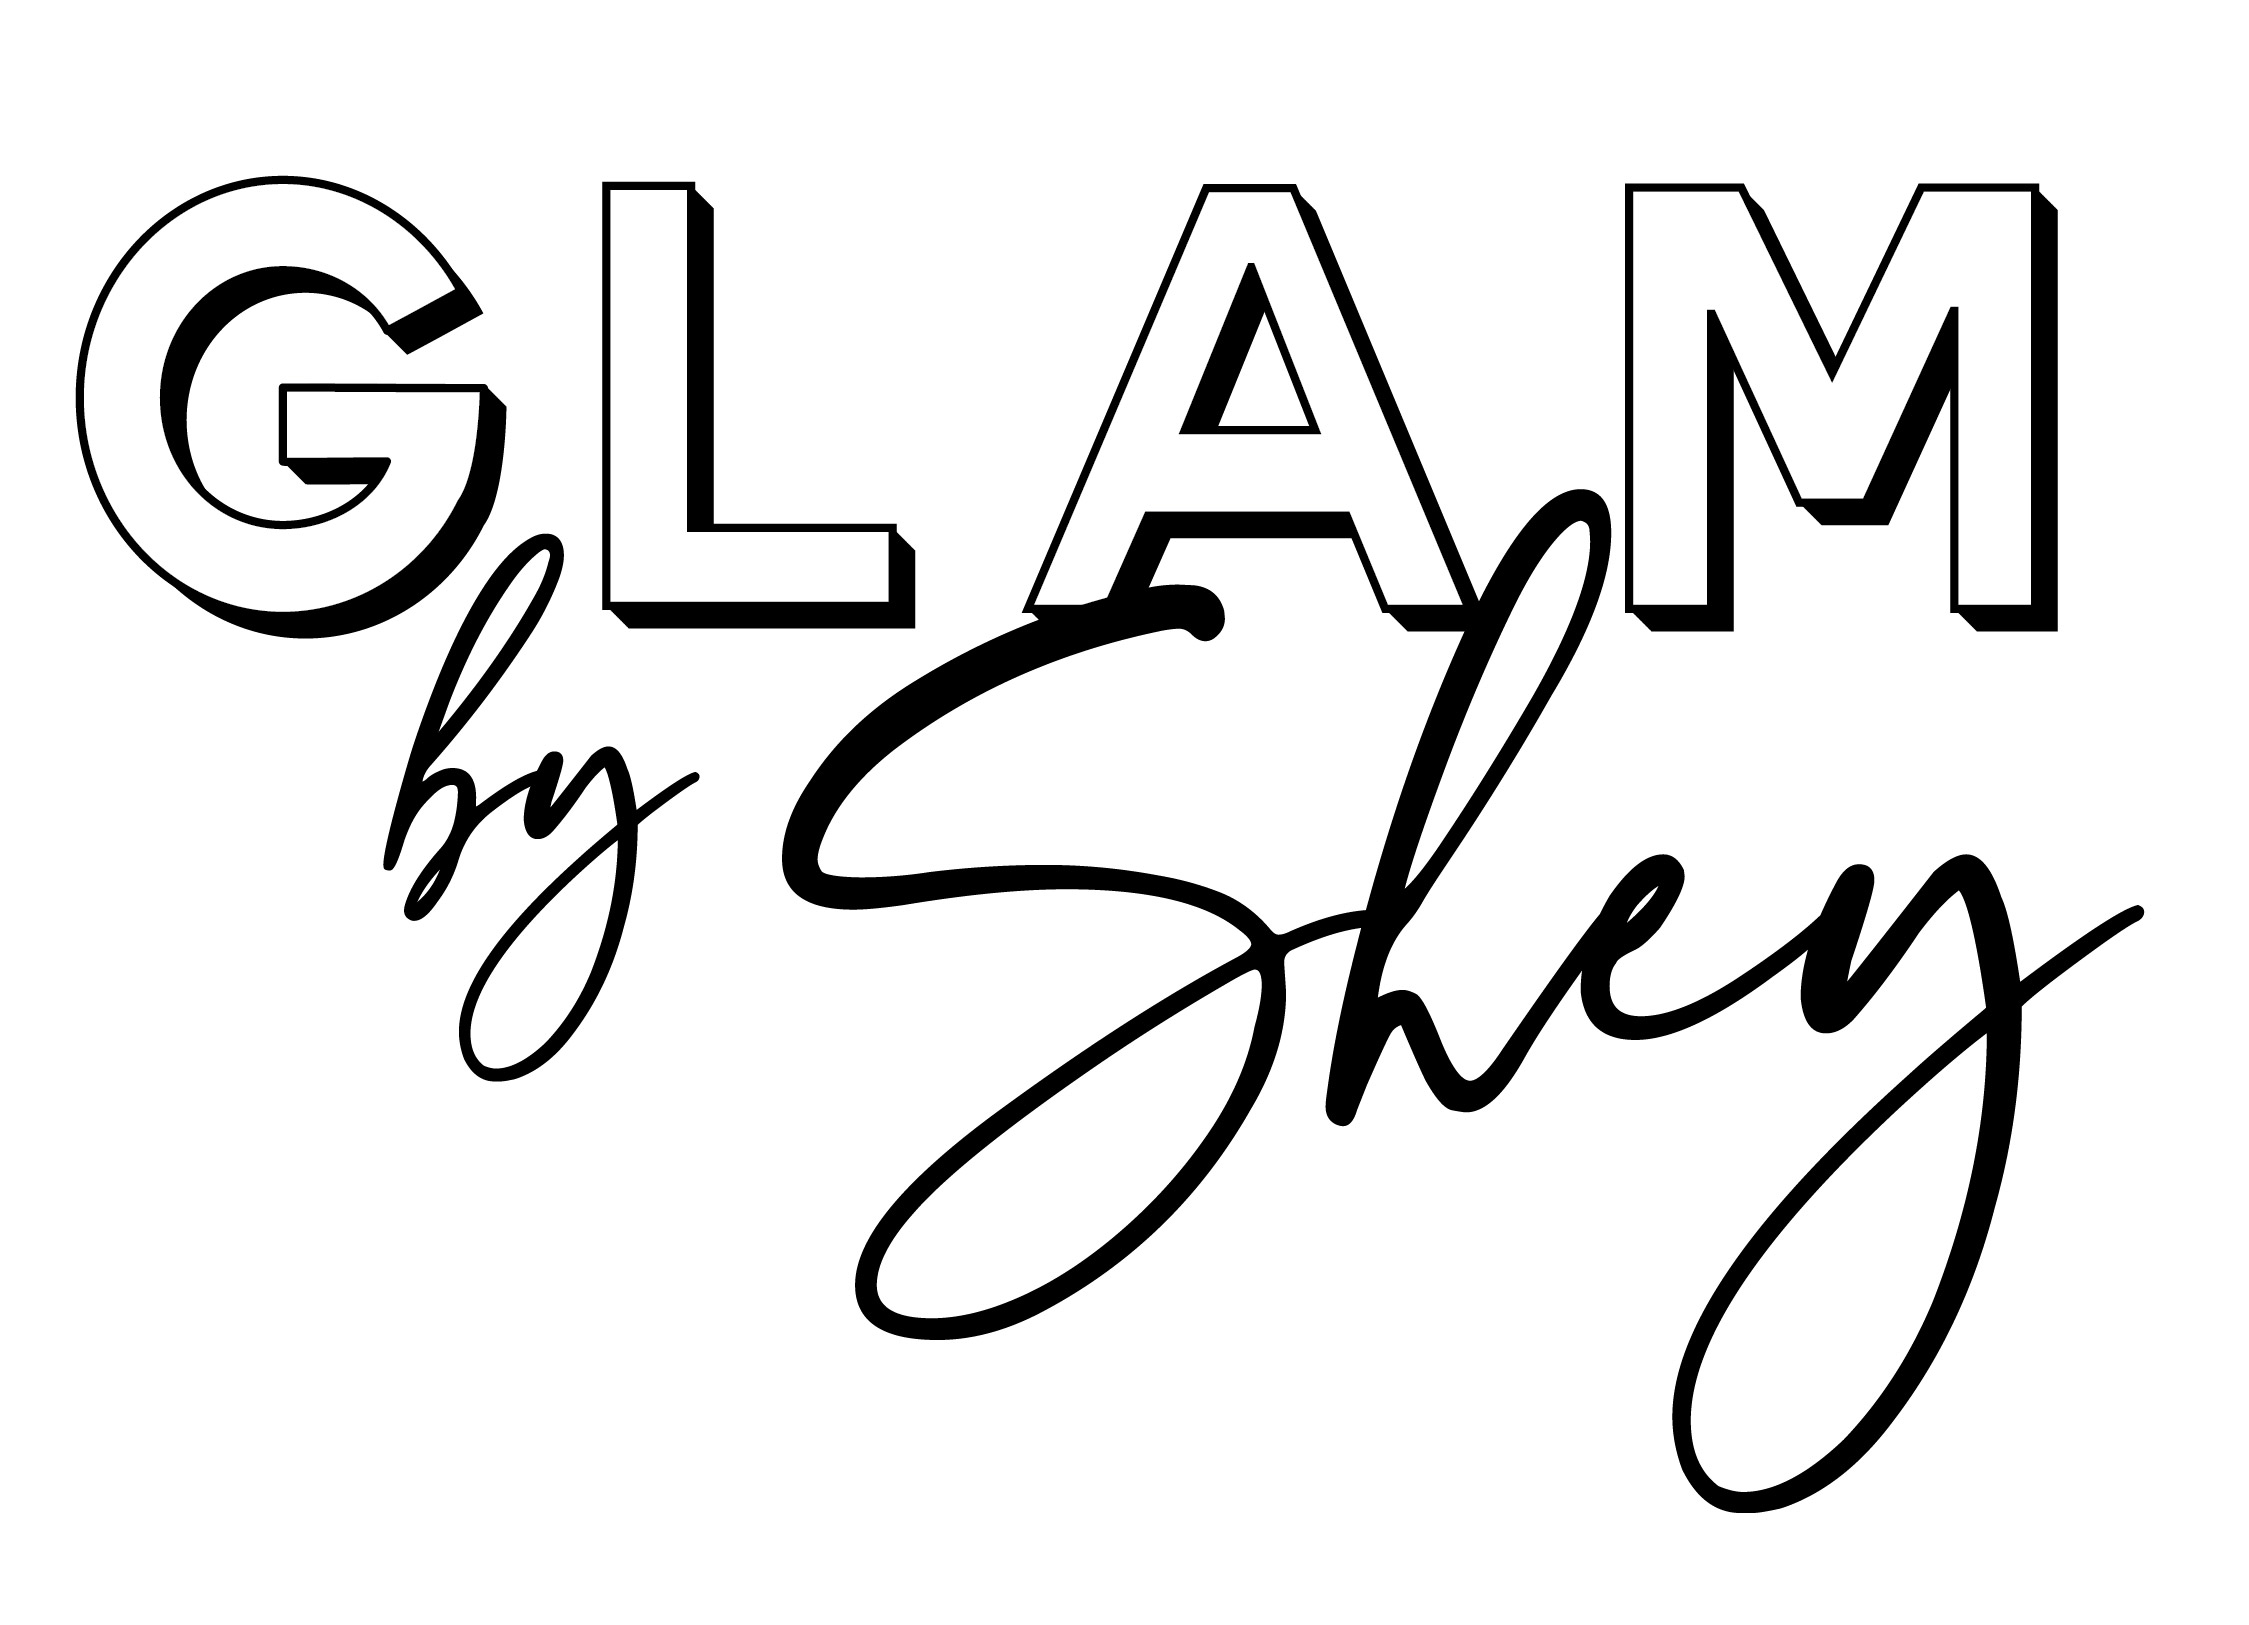 https://www.glambyshey.com